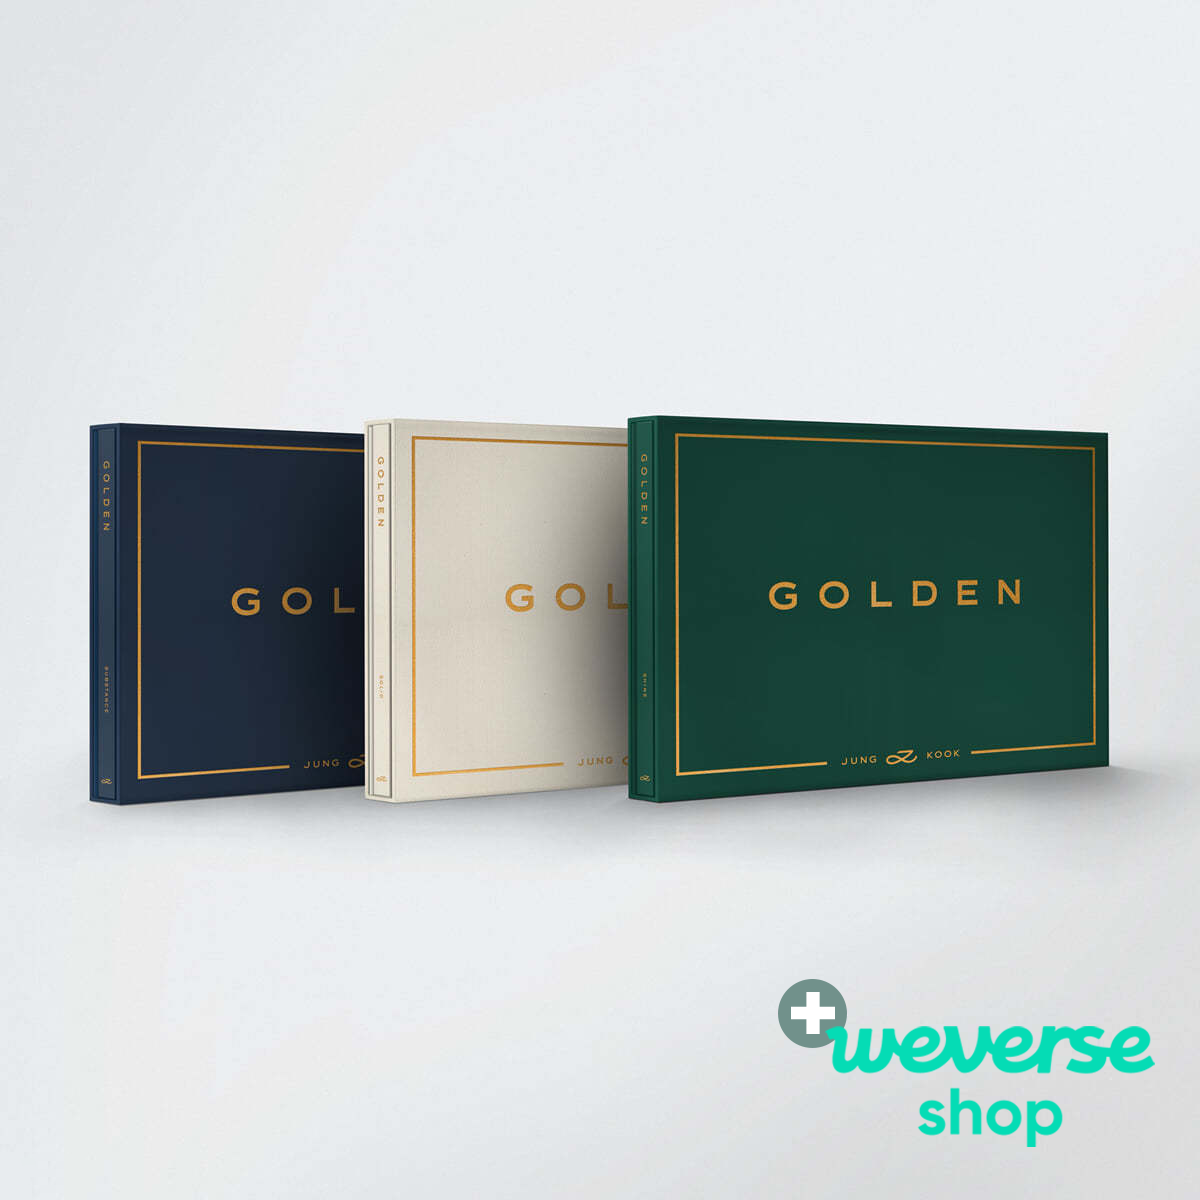 Jung Kook (BTS) - GOLDEN + Weverse Shop P.O.B [PRE-ORDER]